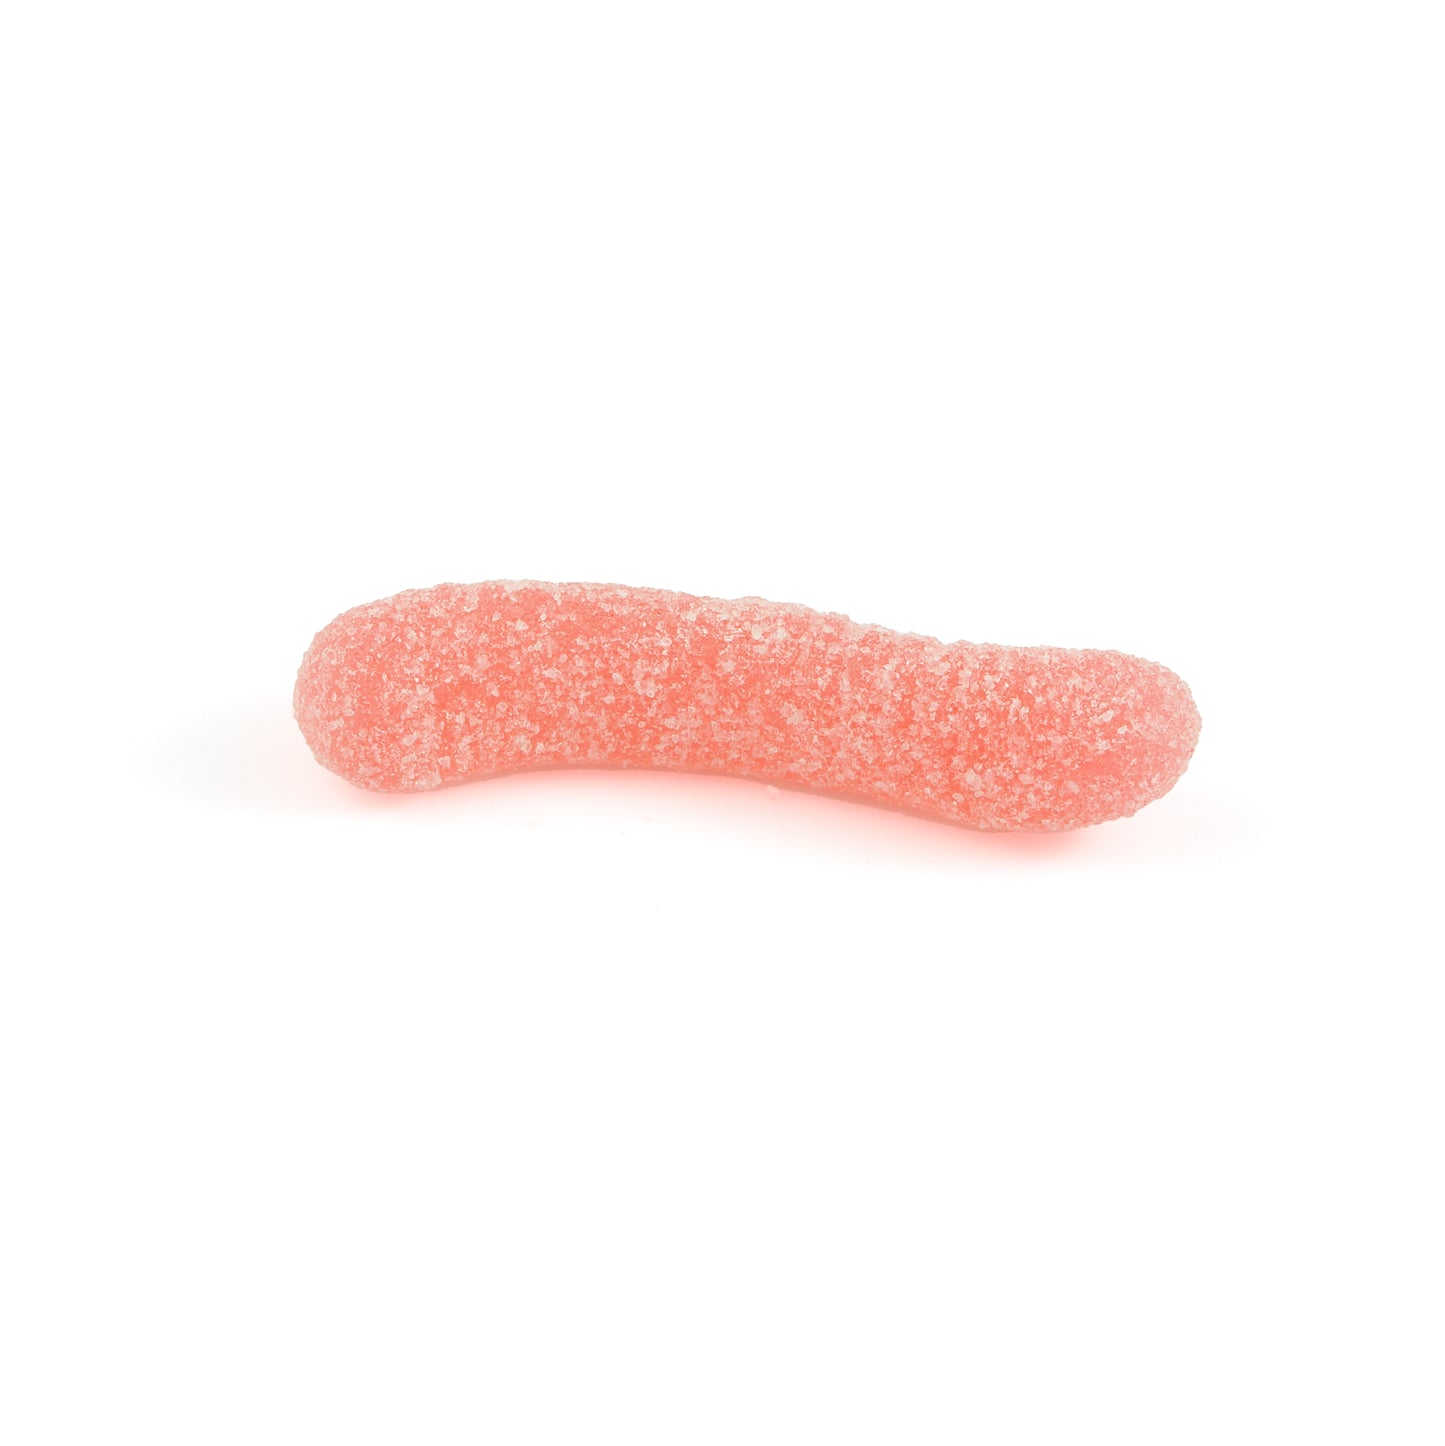 Super Sour Gummy Worms